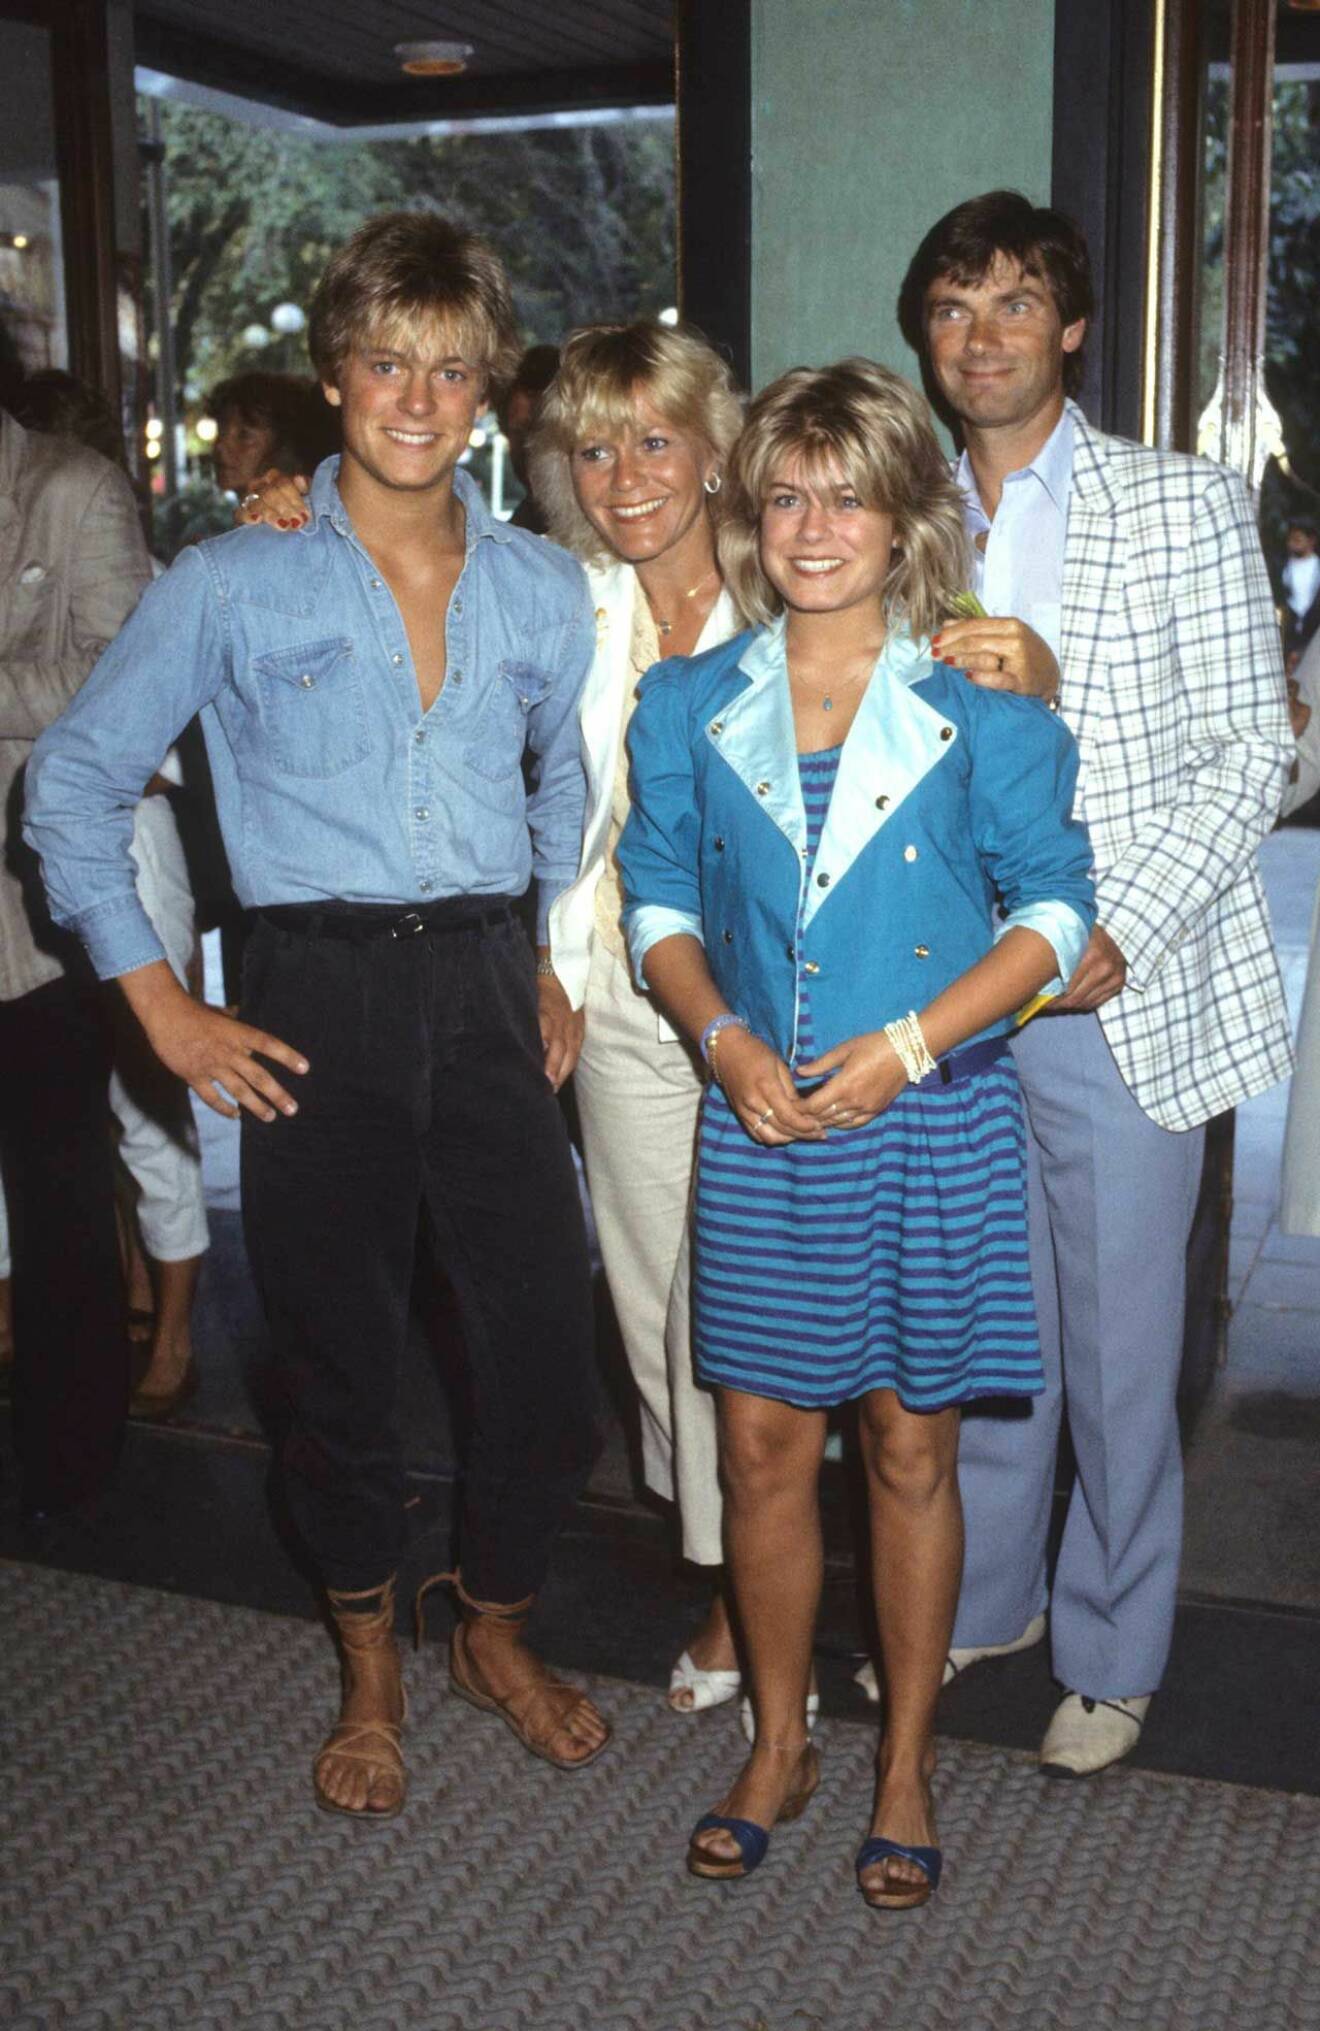 En sådan härlig bild! Christina och Hans med Pernilla och Niclas, året är 1983 och spana gärna in brorsan Niclas sandaler!